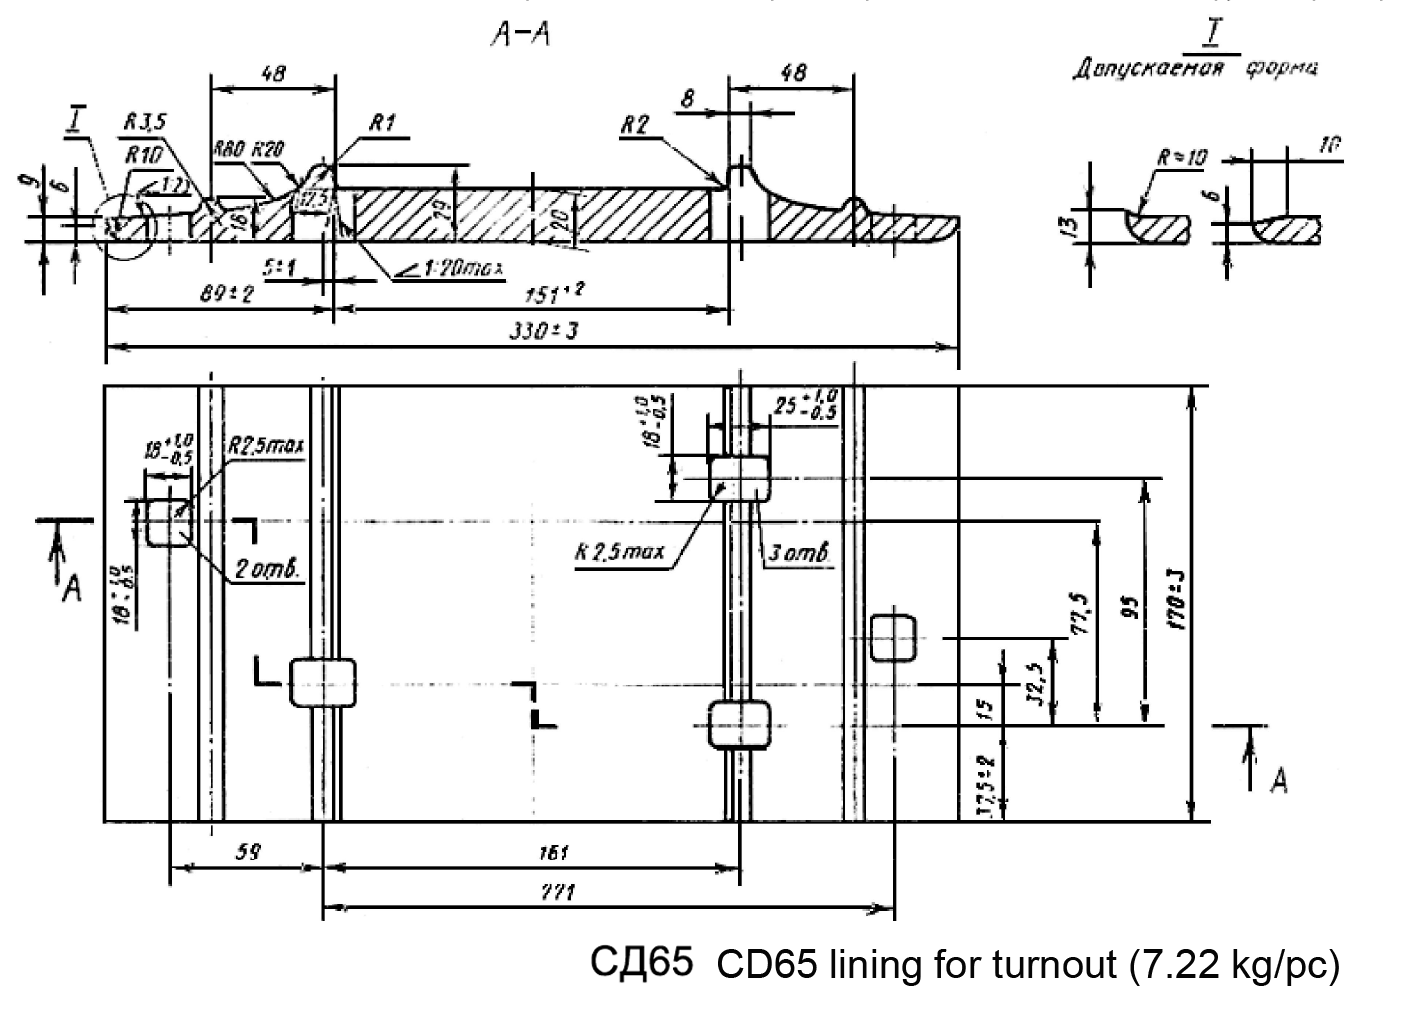 CD65 /CK65 / D65 / DH65 / KD65 / KB65-2 lapisan pelat dasi kereta api